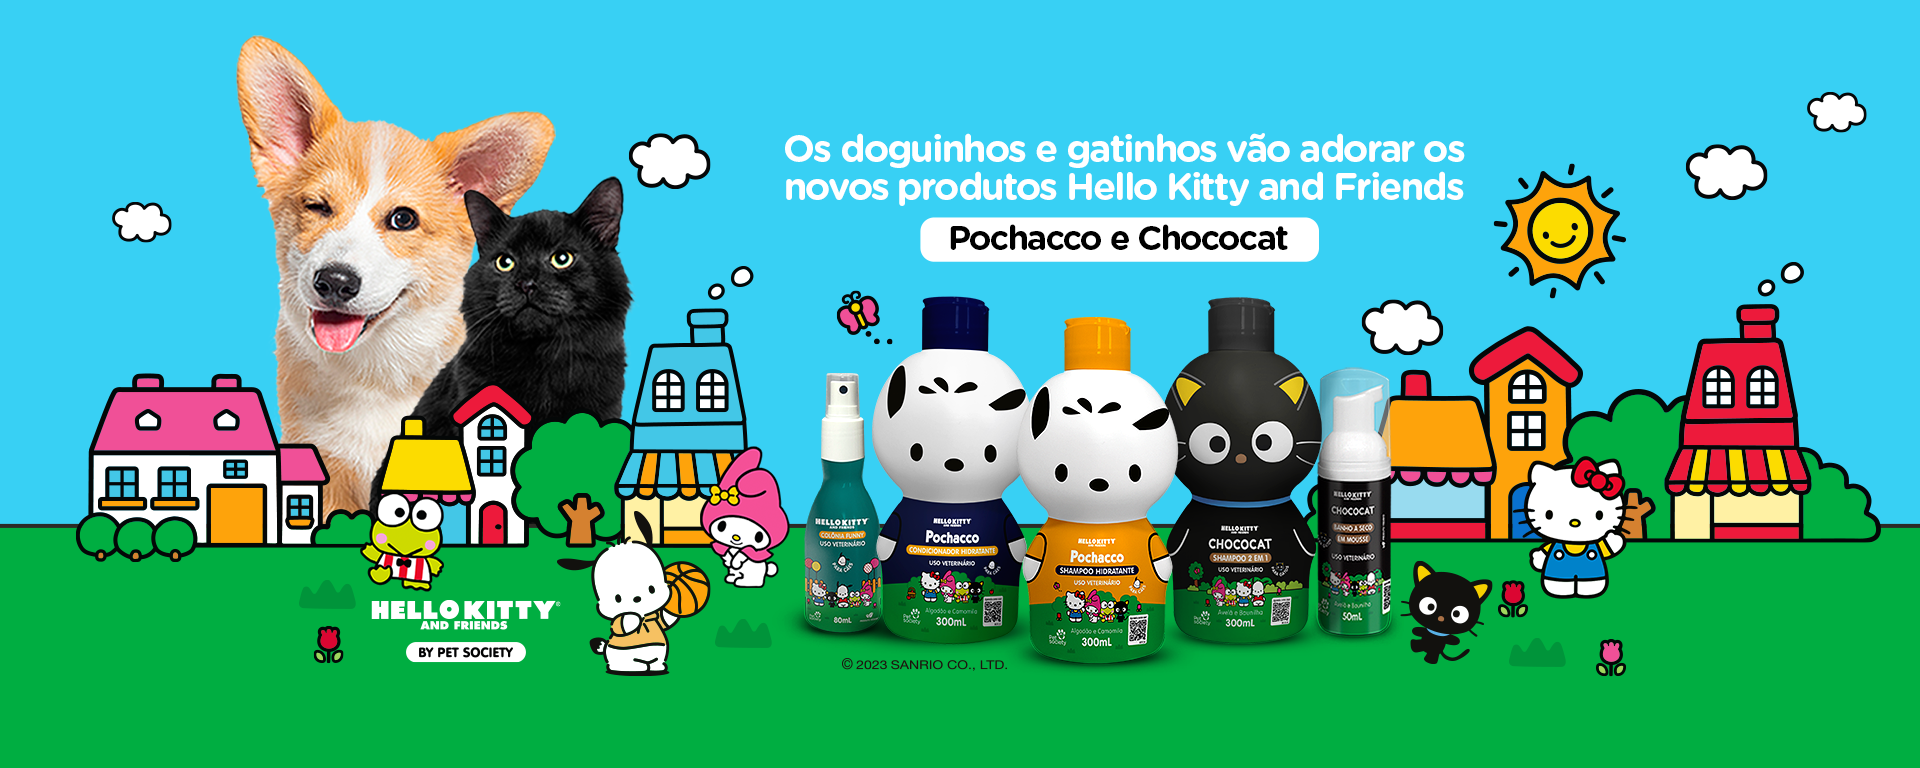 Os doguinhos e gatinhos vão adorar os novos produtos Hello Kitty and Friends Pochacco e Chococat